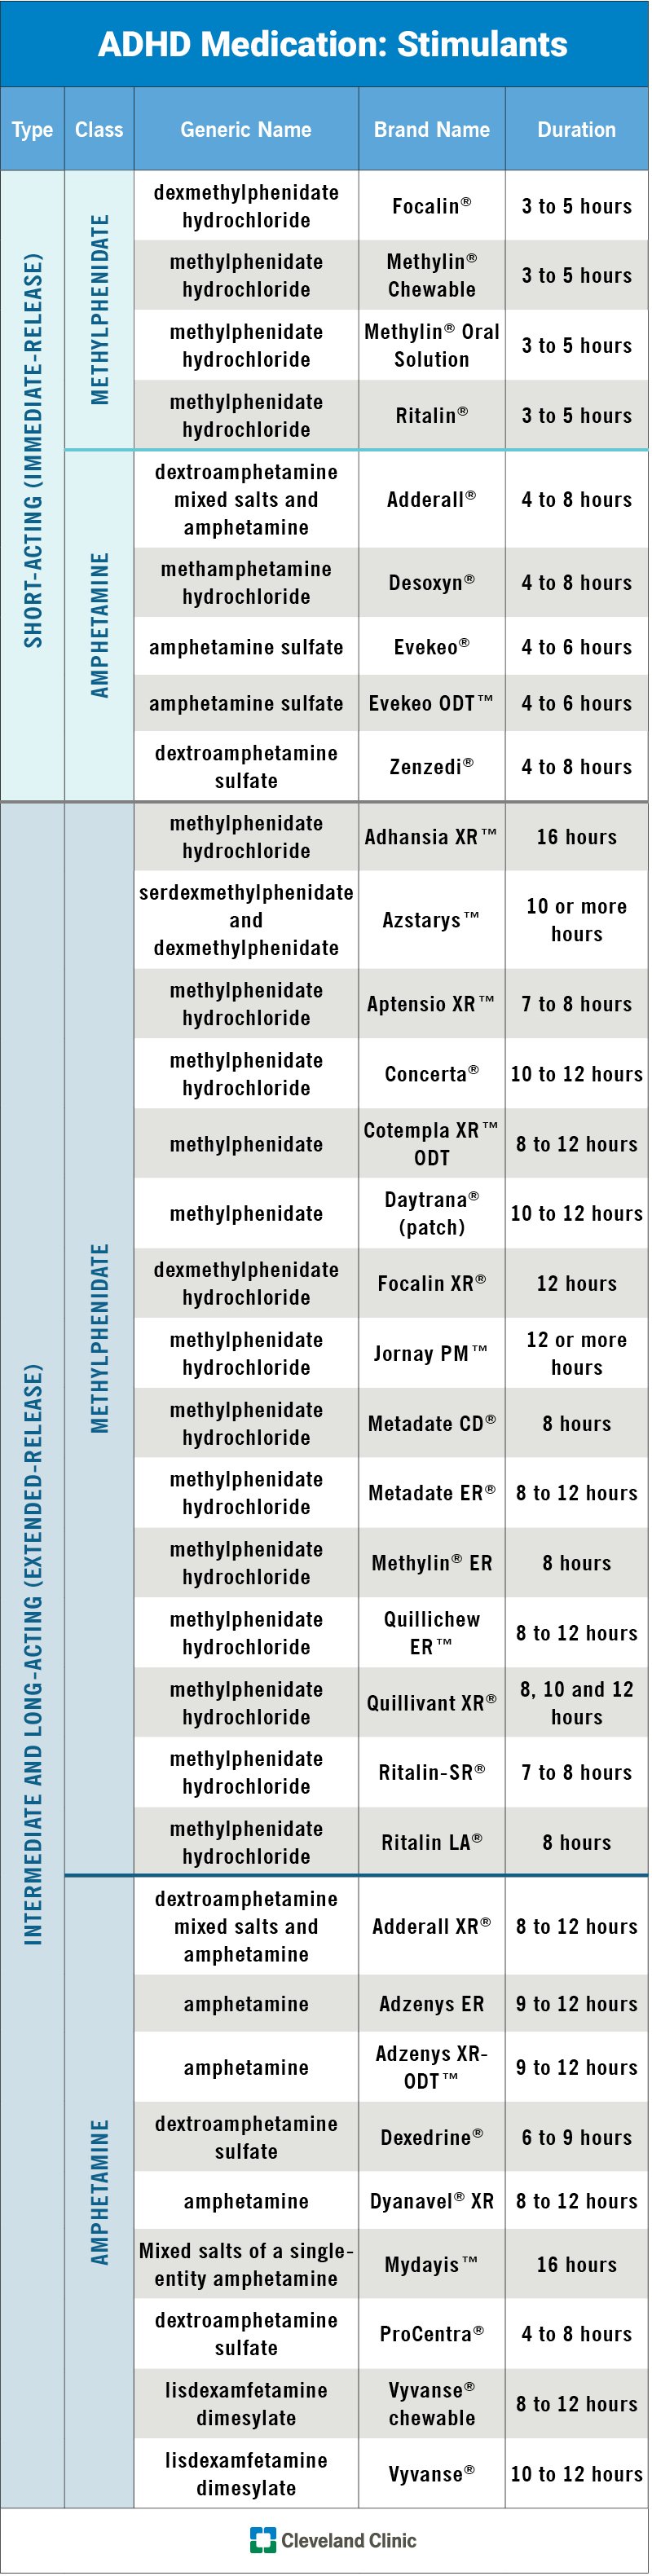 图表显示了每种兴奋剂多动症药物的类型、类别、通用名称、品牌名称和持续时间。